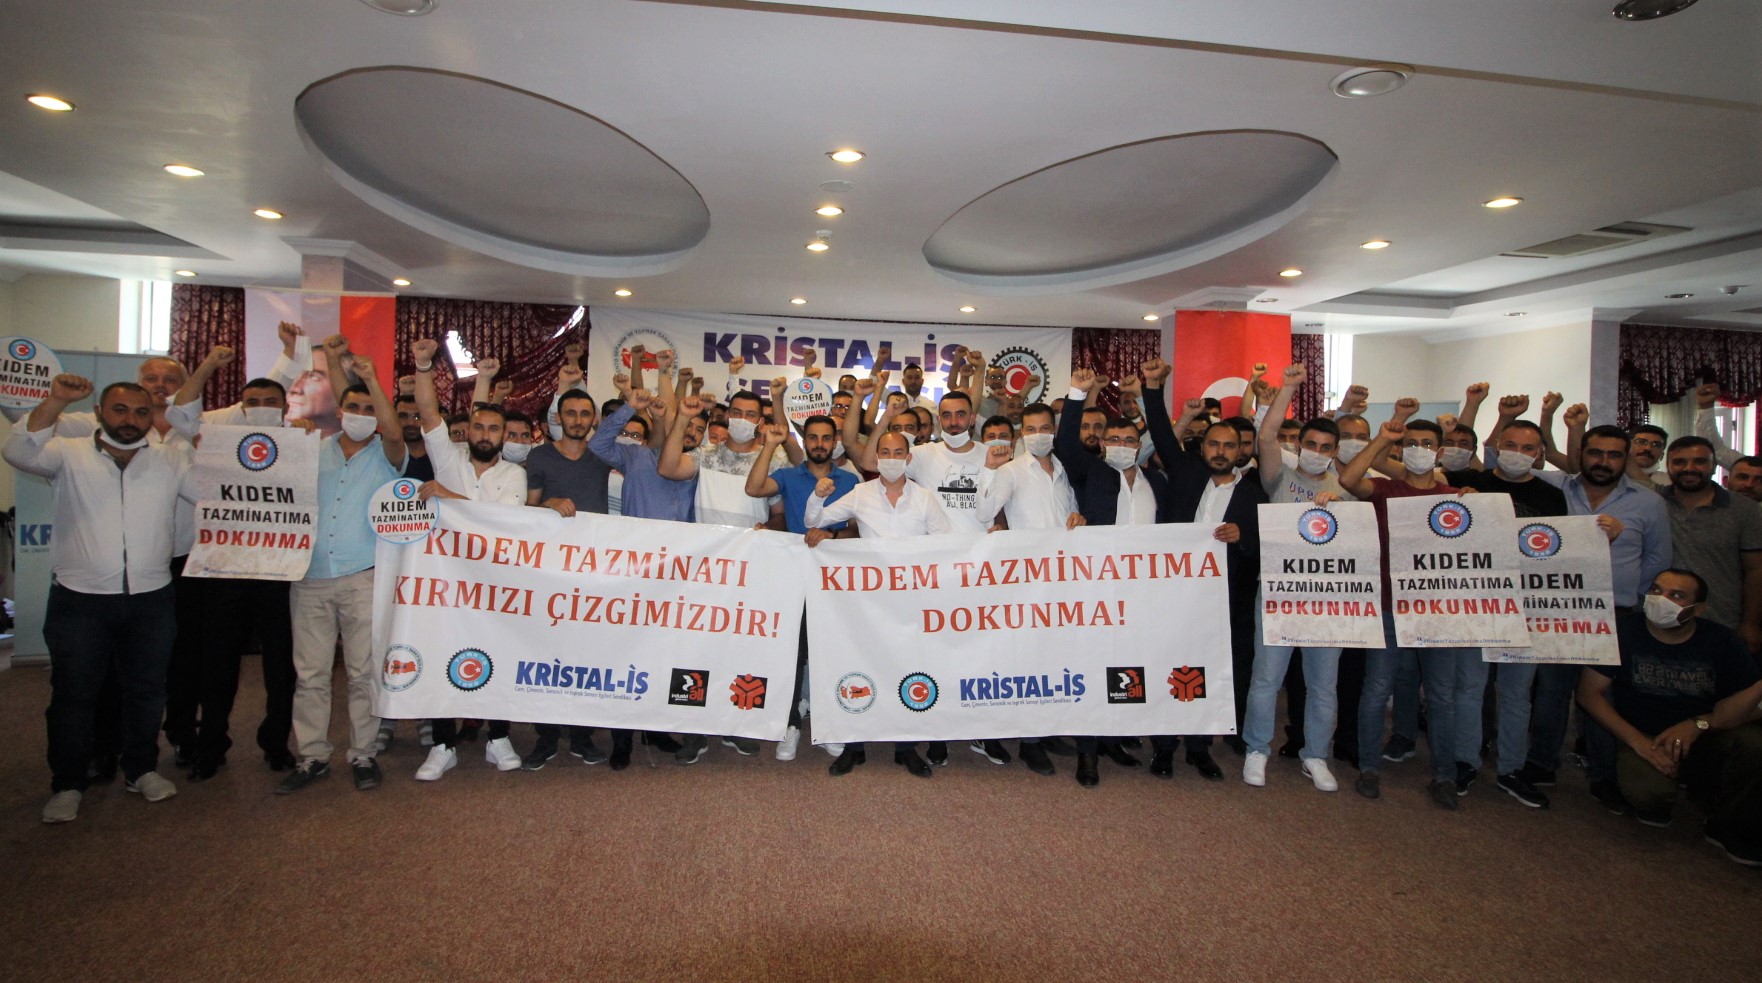 Ankara Şubemizin 1. Olağan Genel Kurulu gerçekleştirildi